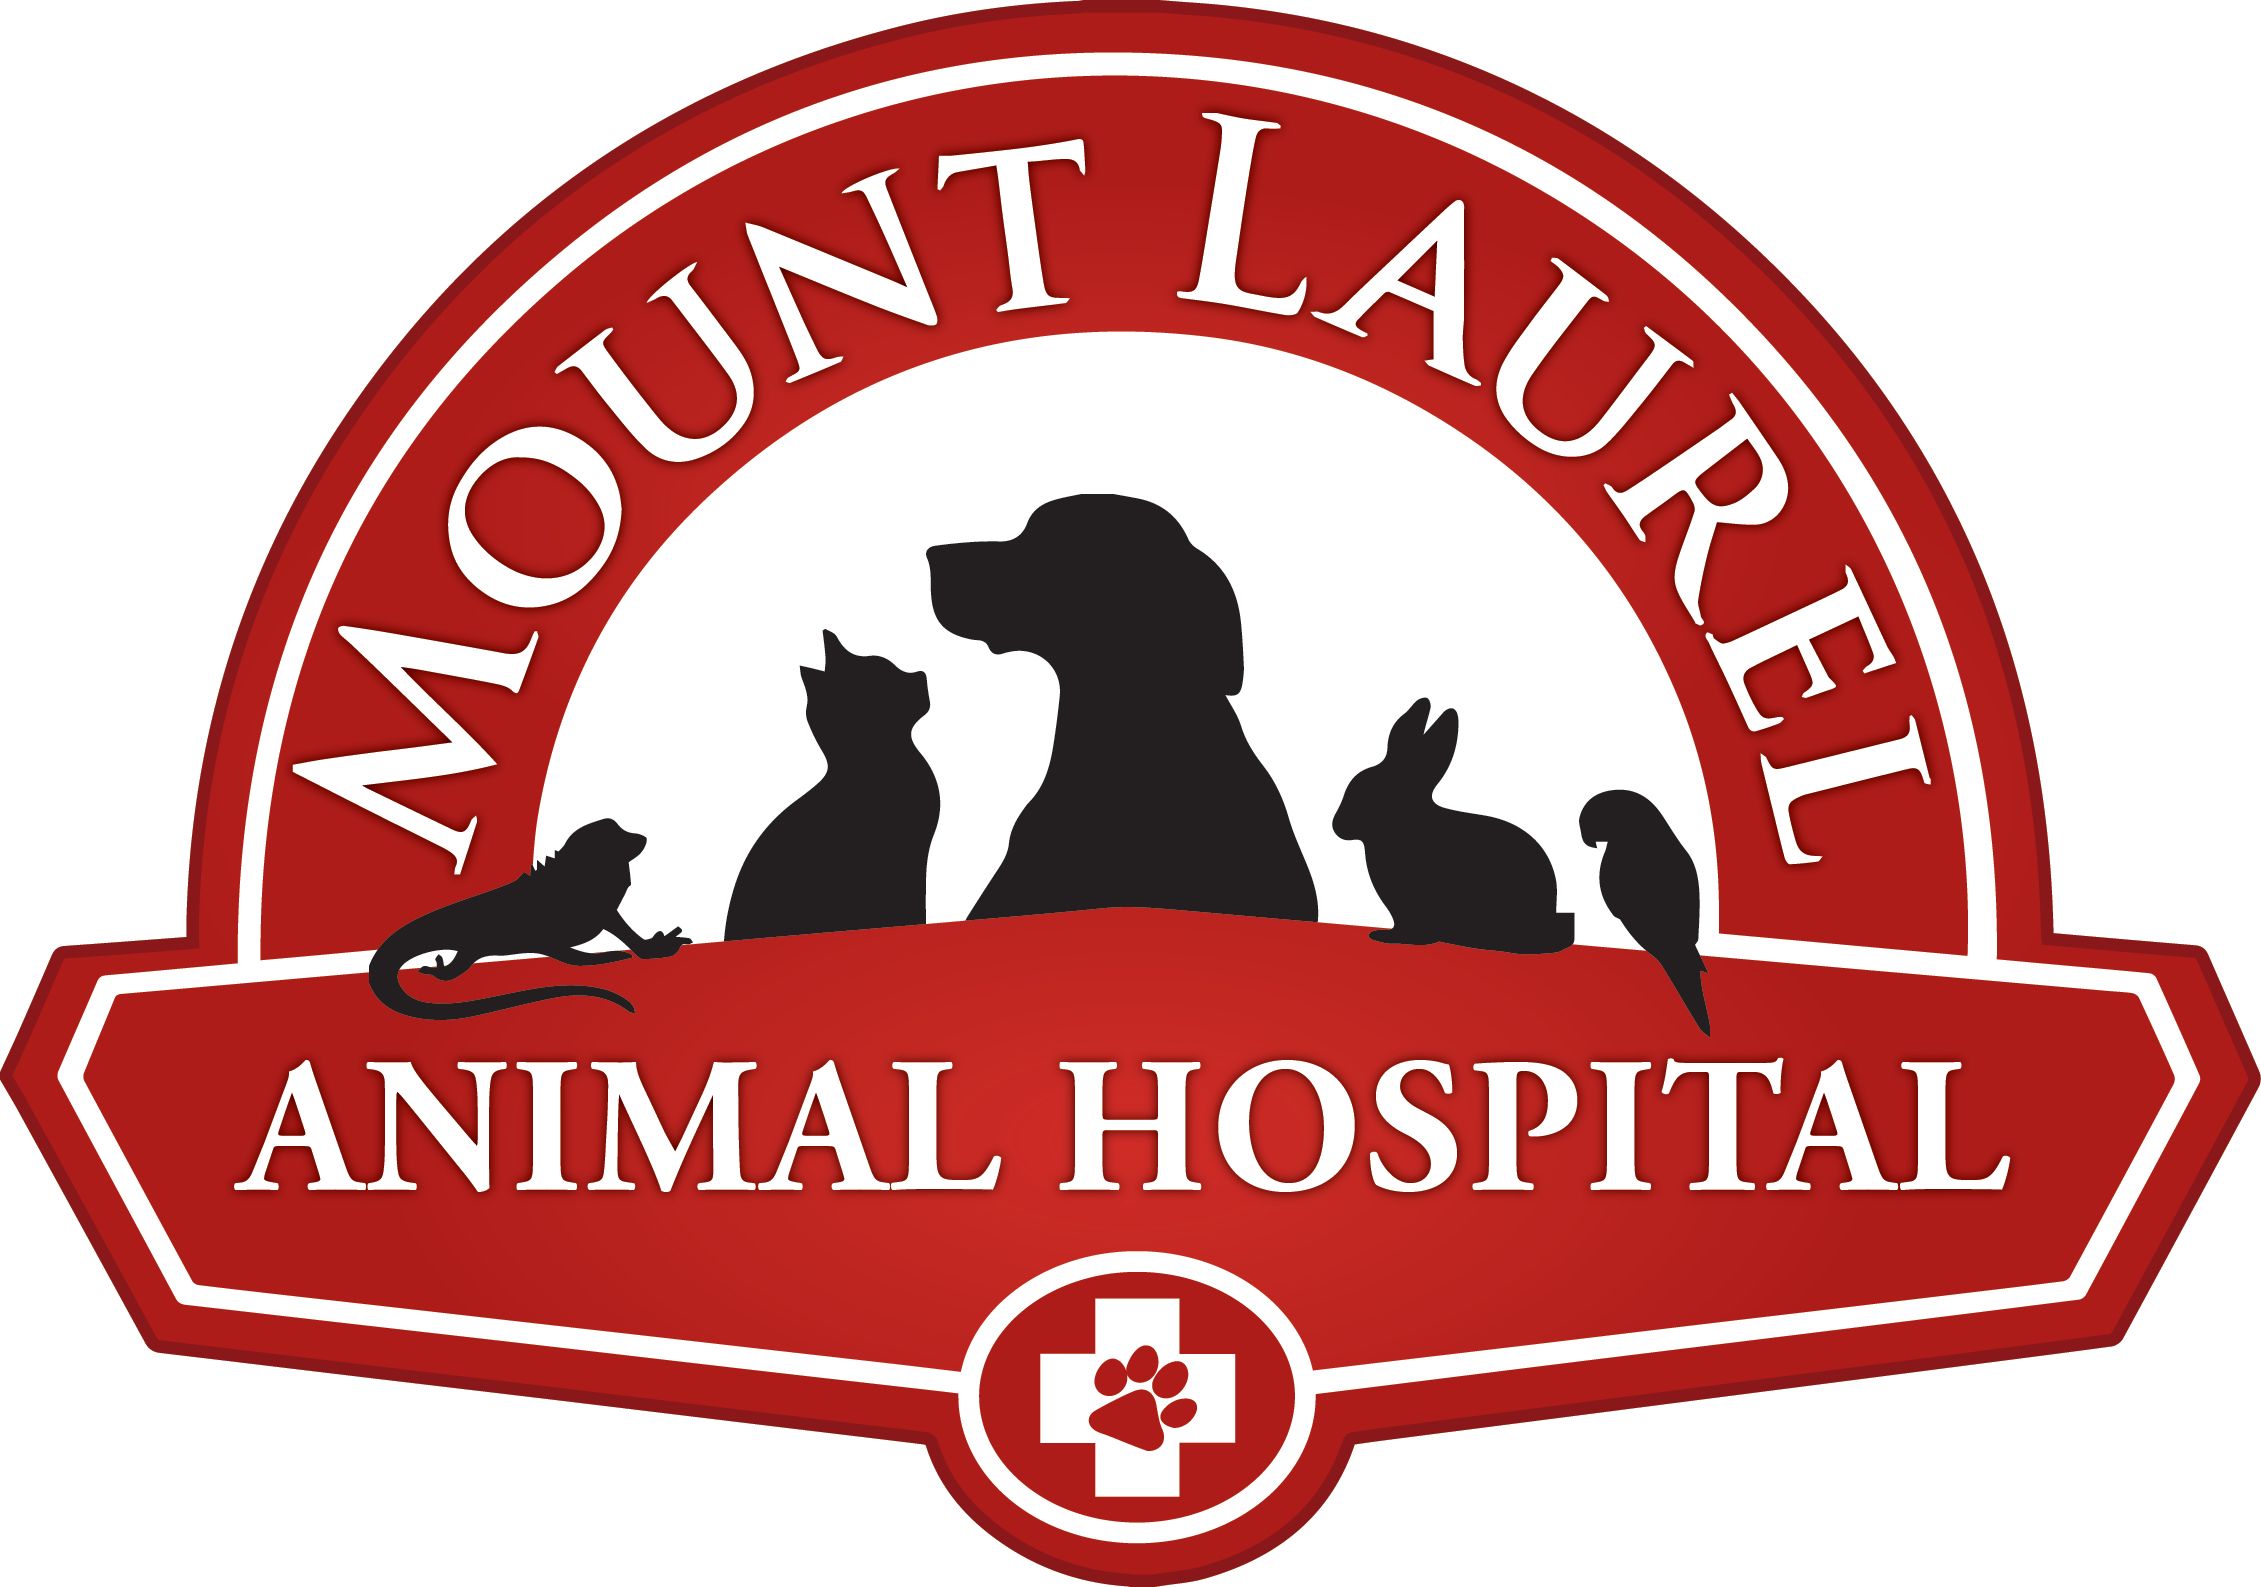 Mount Laurel Animal Hospital (MLAH) logo